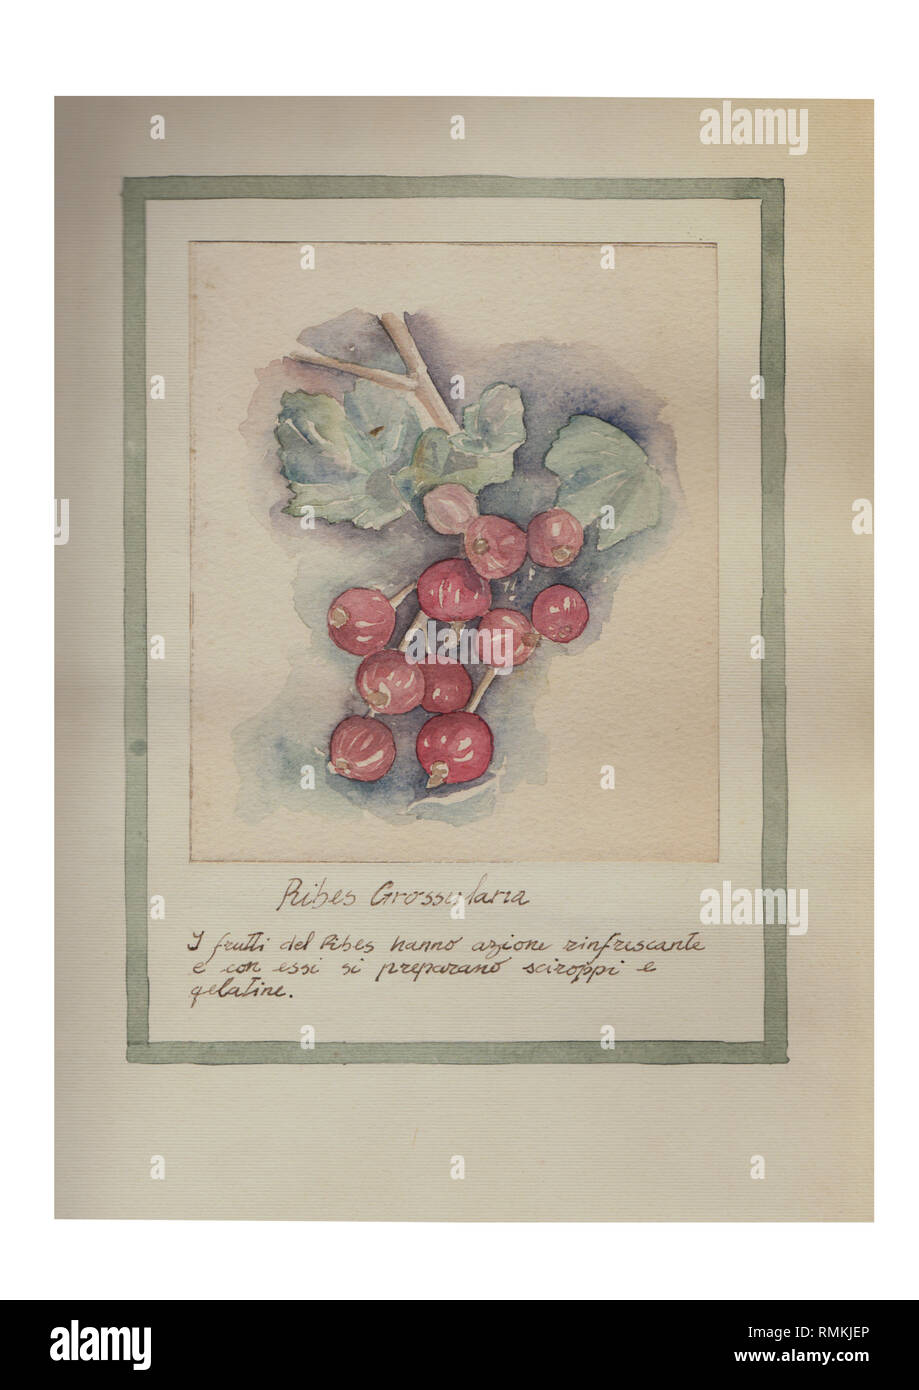 Die Früchte der Ribes, erfrischend und mit Ihnen bereiten Sirupe Hand gezeichnet Aquarell Malerei dekorative - Ribes Grossularia Stockfoto